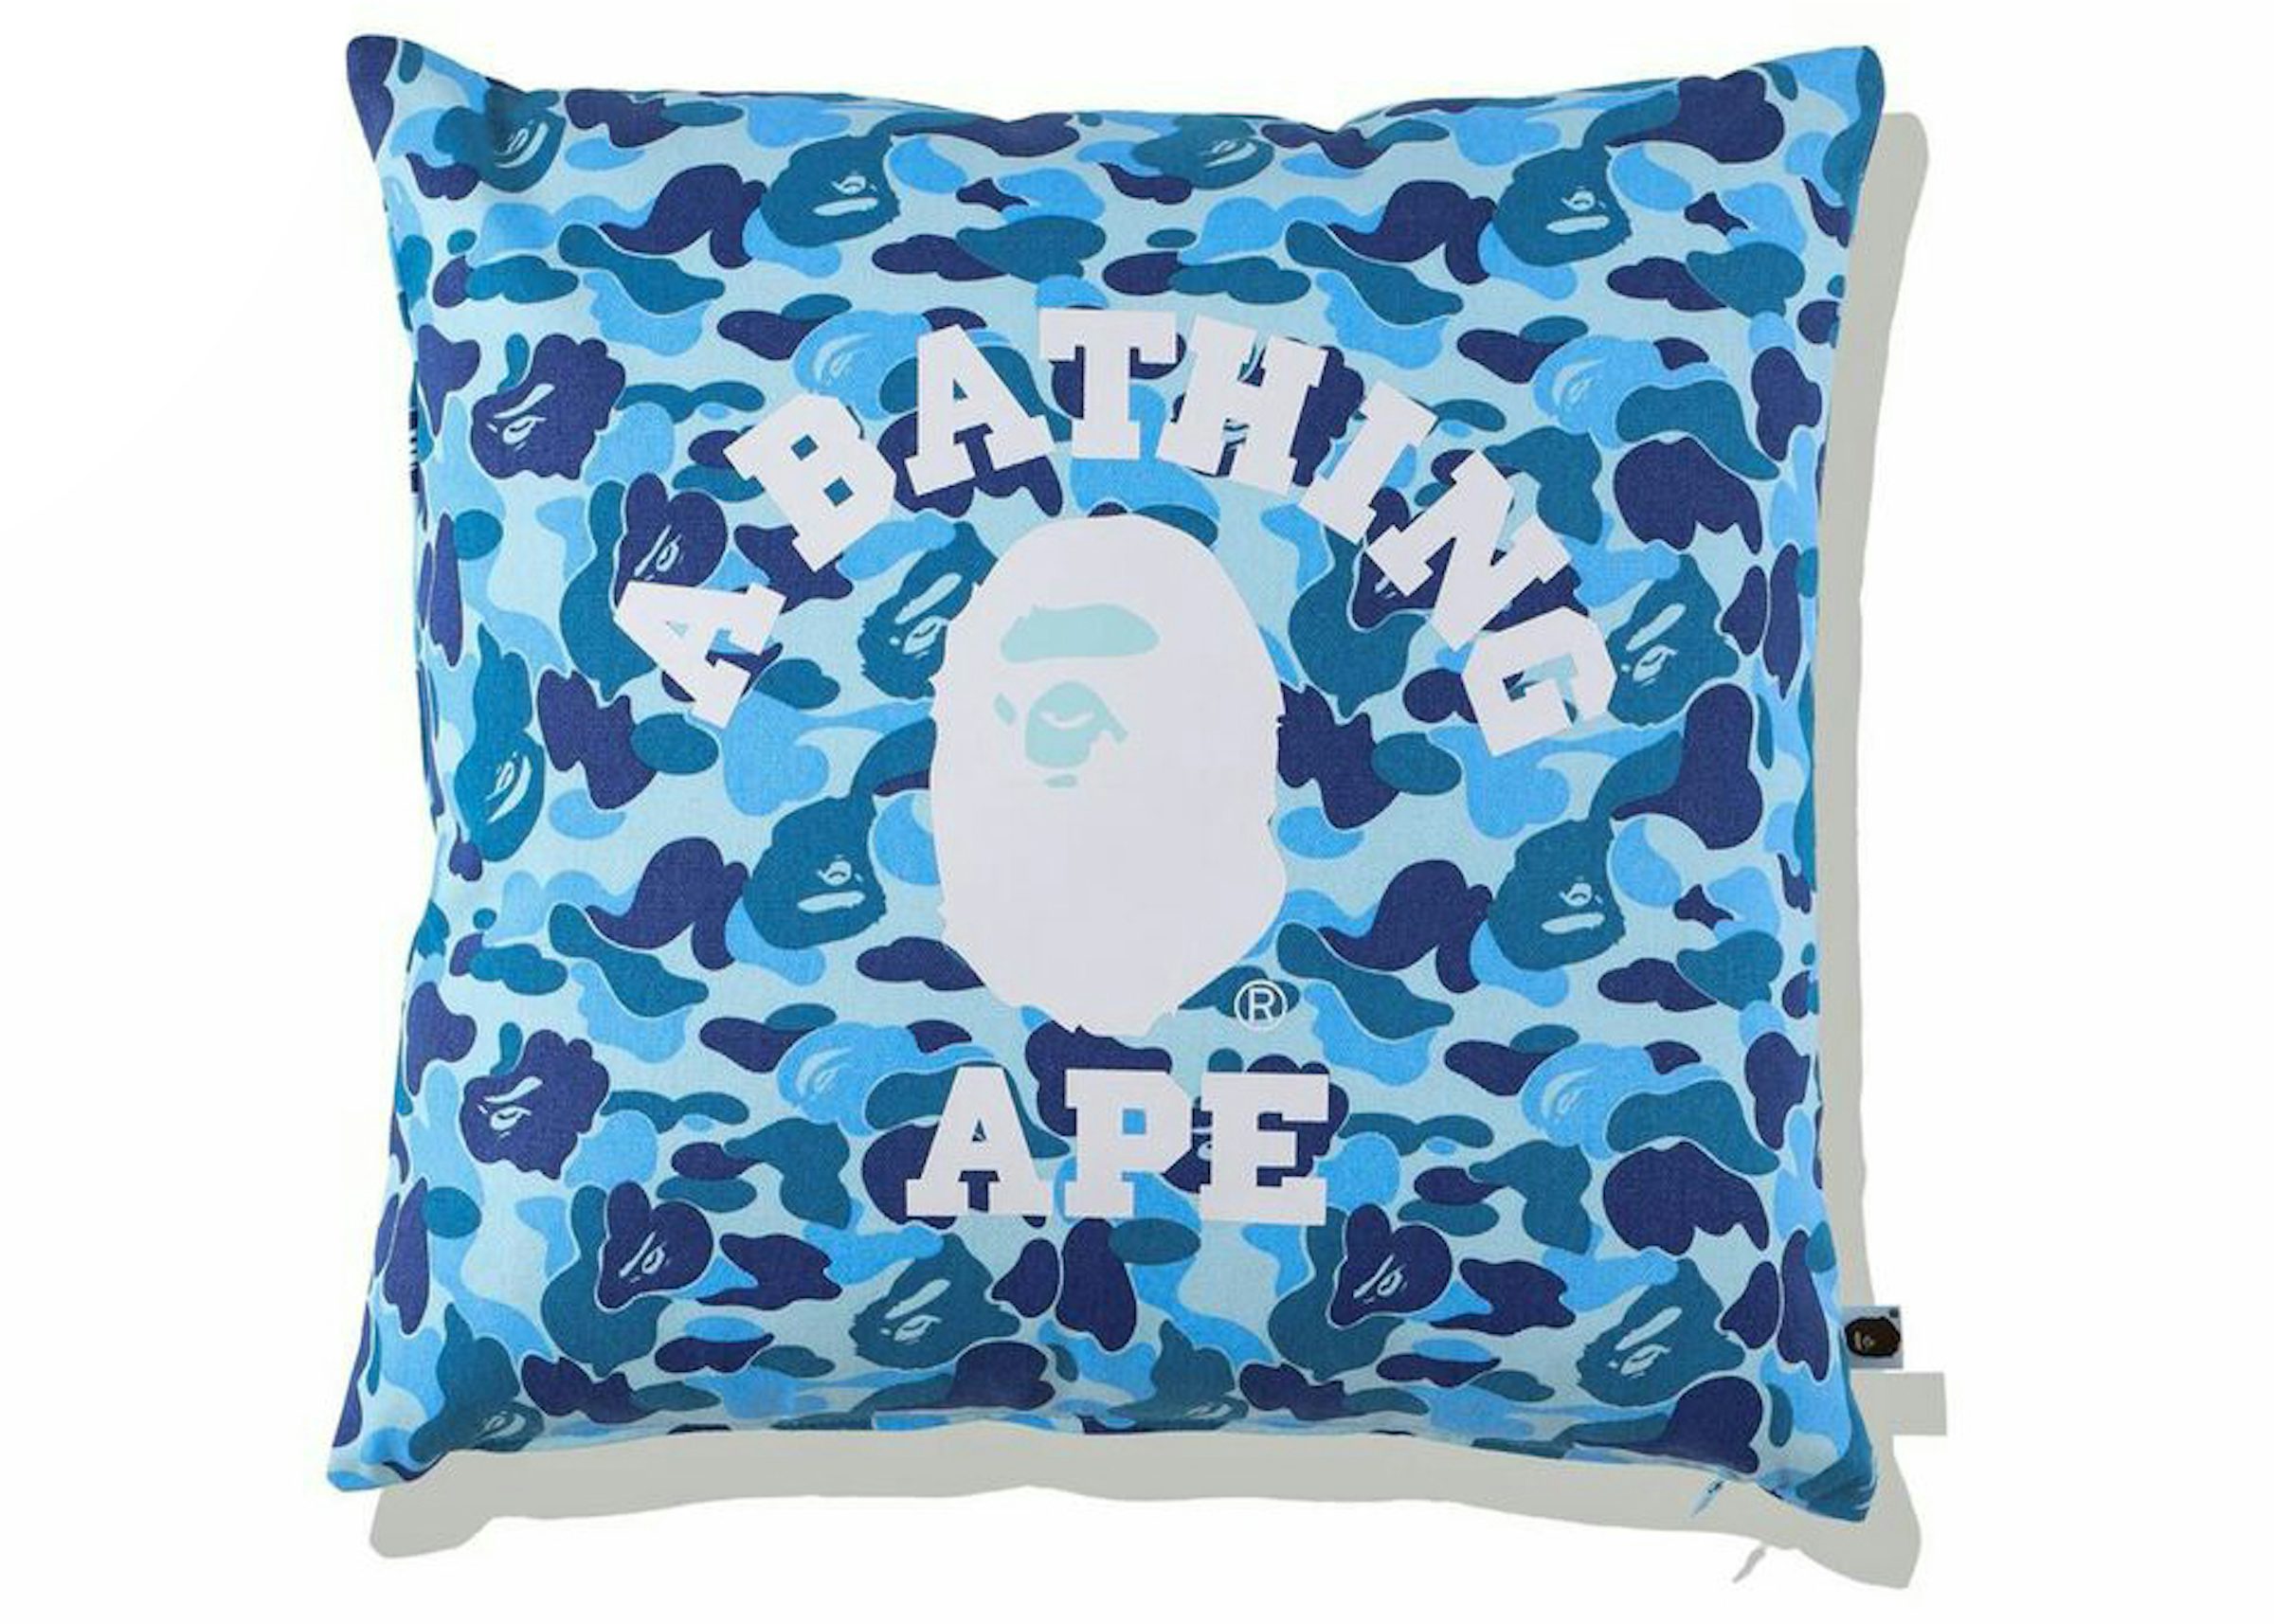 APE-Bape-Camouflage-Square-Pillowcase-Cushion-Cover-Creative